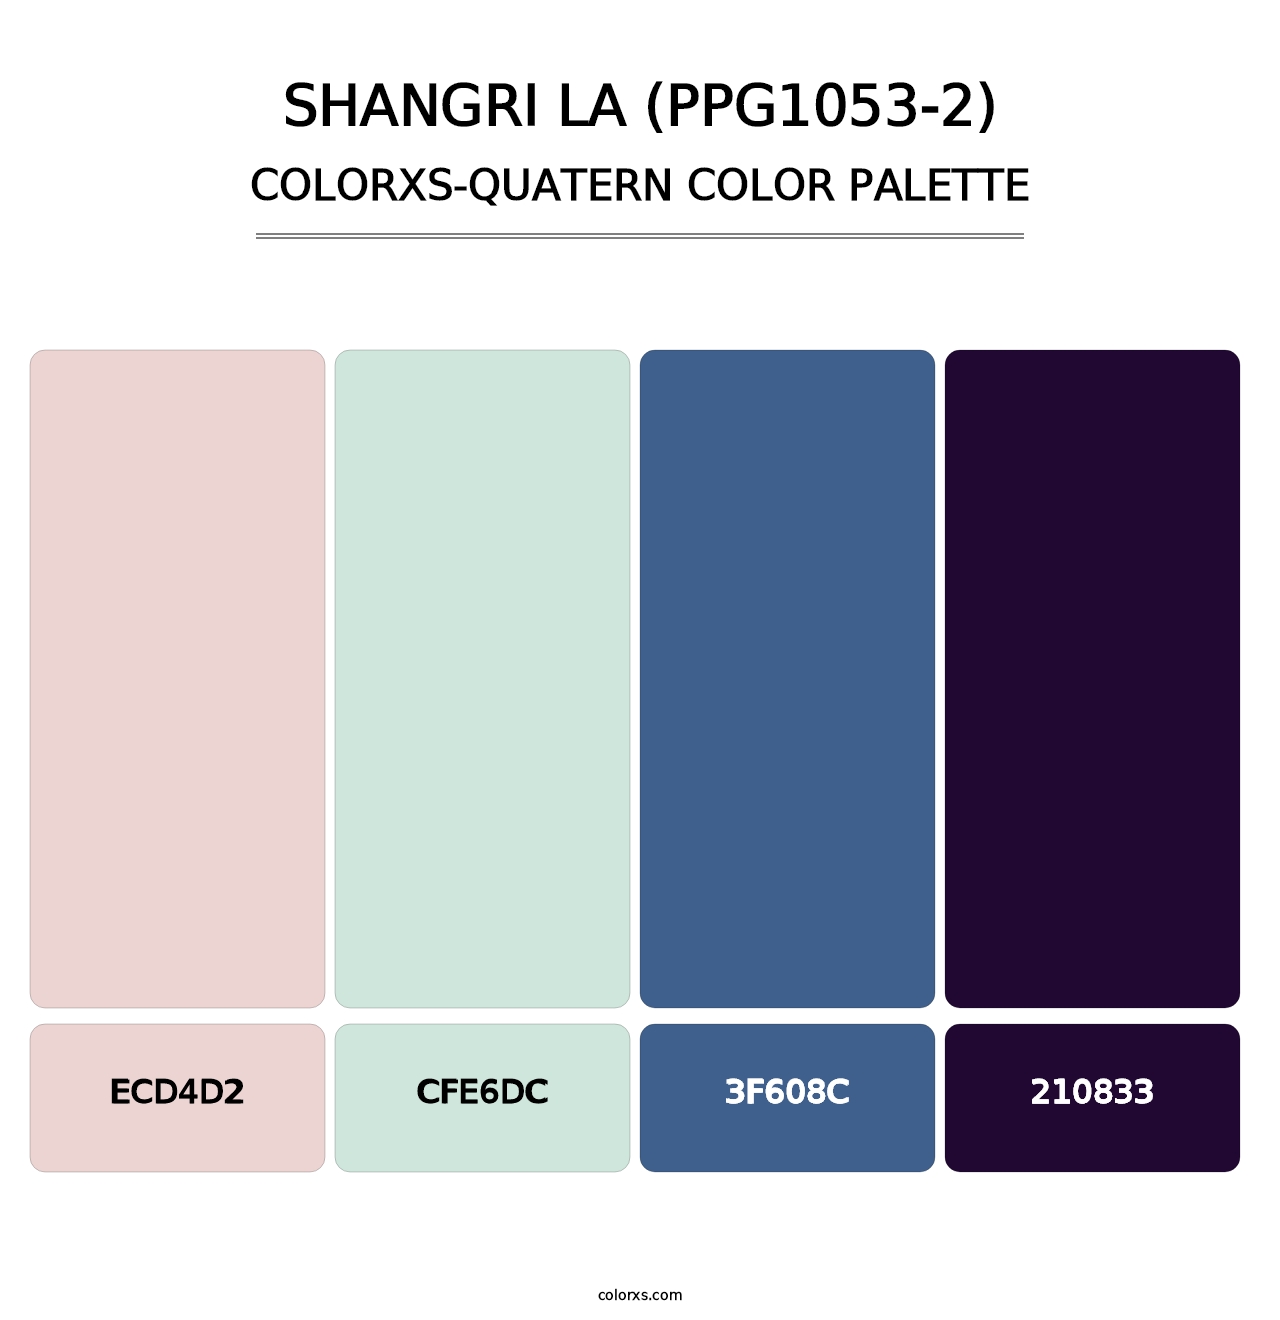 Shangri La (PPG1053-2) - Colorxs Quatern Palette